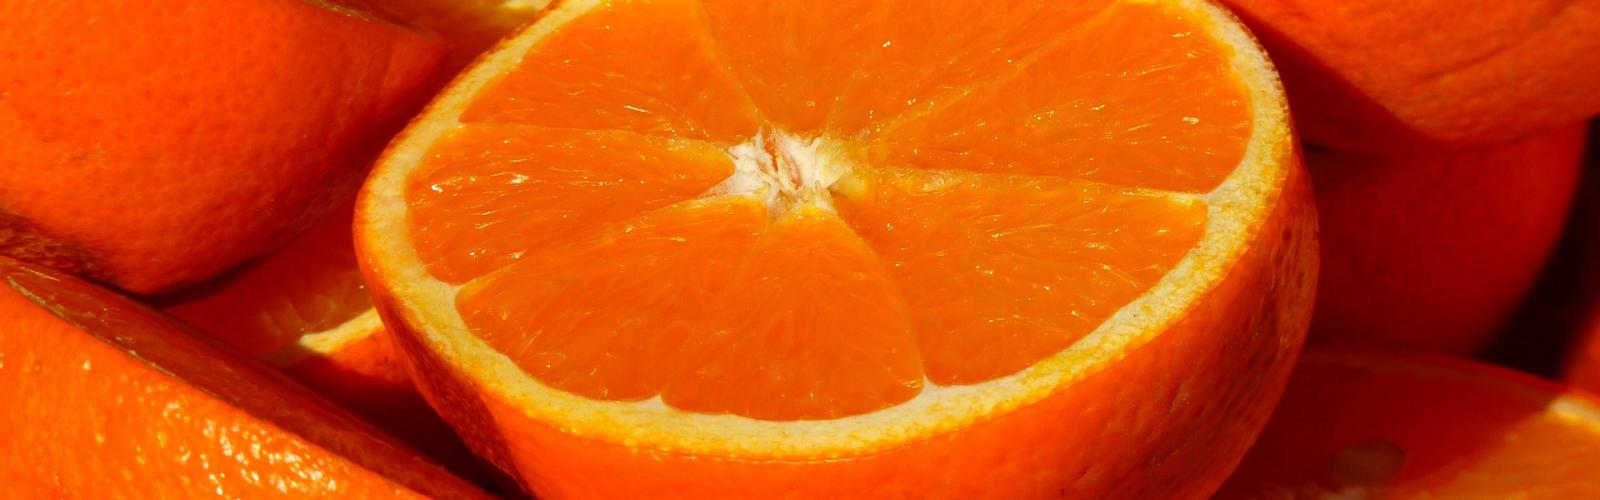 La vitamina C ayuda a combatir las enfermades estacionales